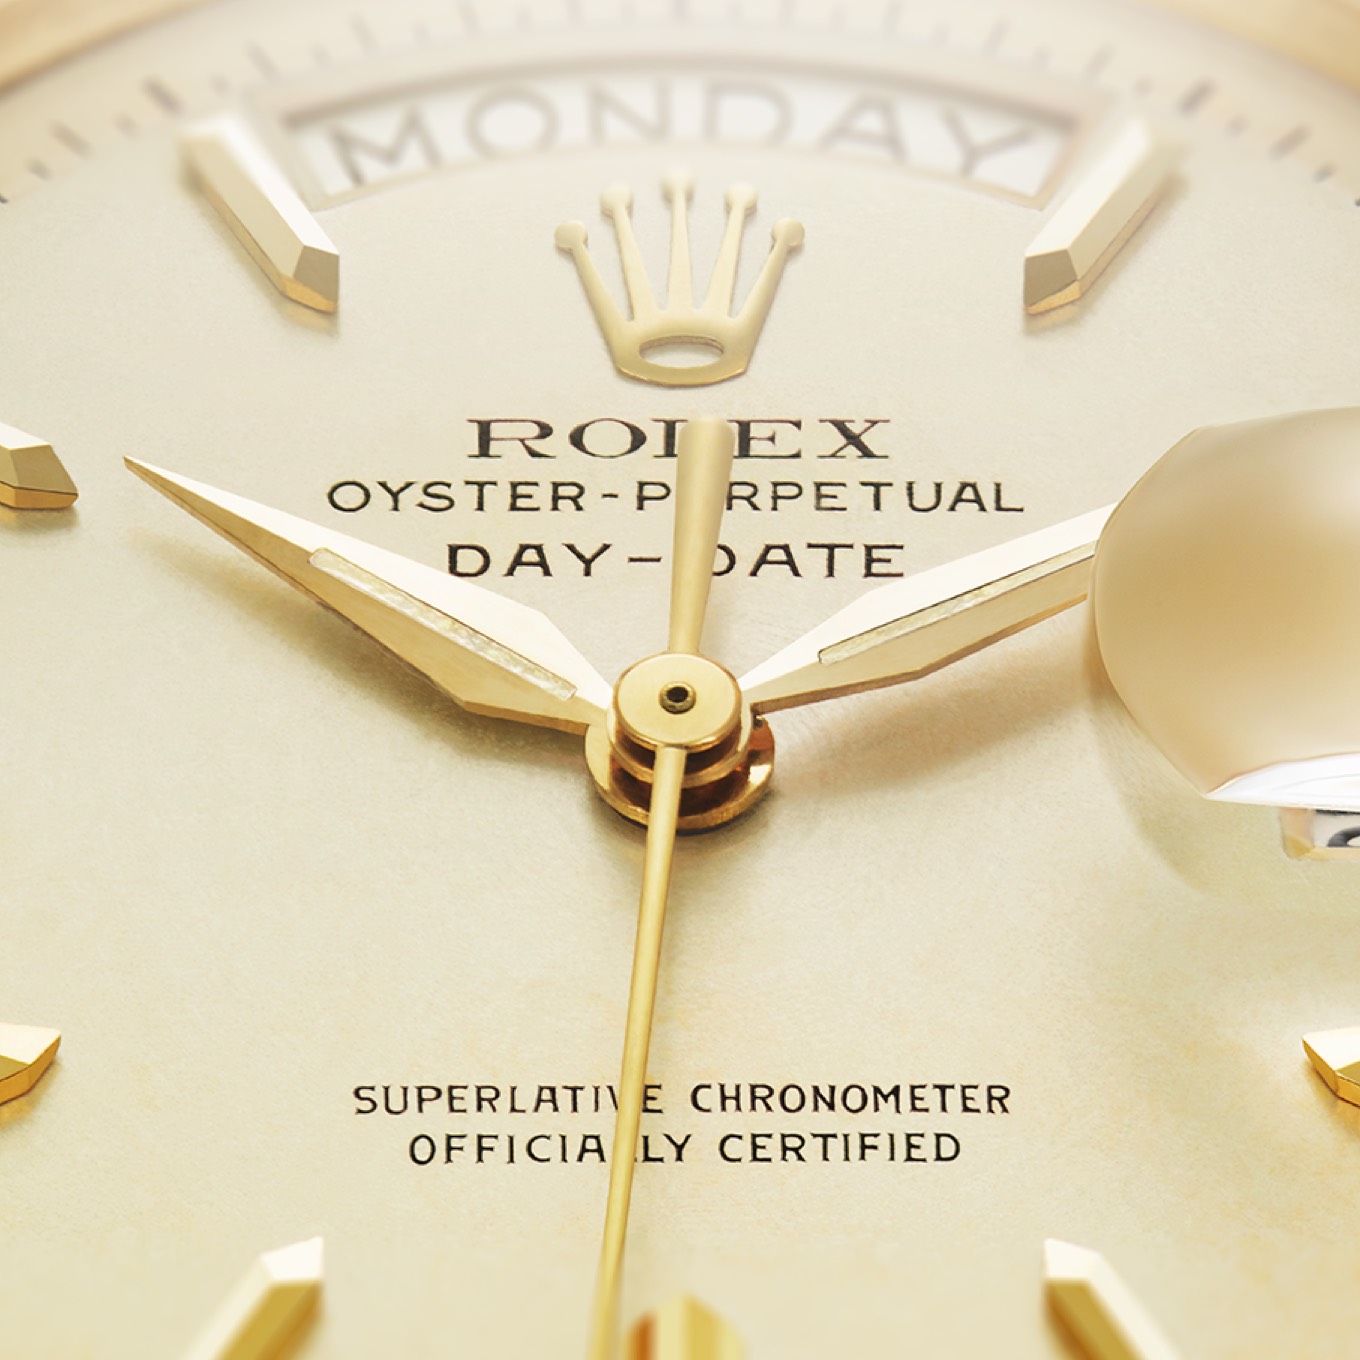 Cronómetro superlativo certificado oficialmente en la esfera de un Rolex Day-Date